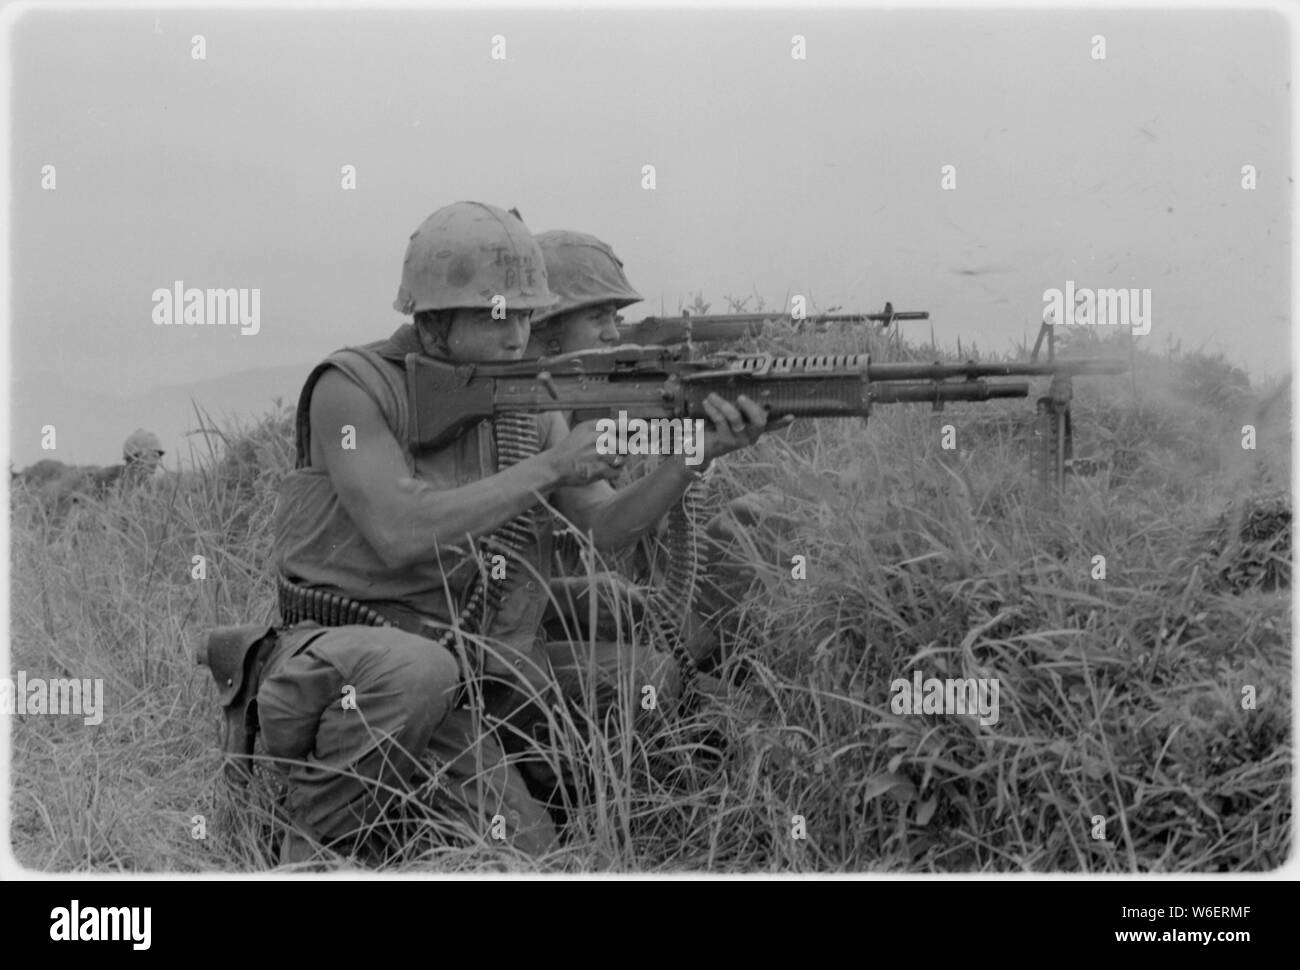 Une machine gunner et un carabinier du 5ème Régiment de Marines le feu sur l'ennemi près de la zone démilitarisée au Vietnam. Banque D'Images